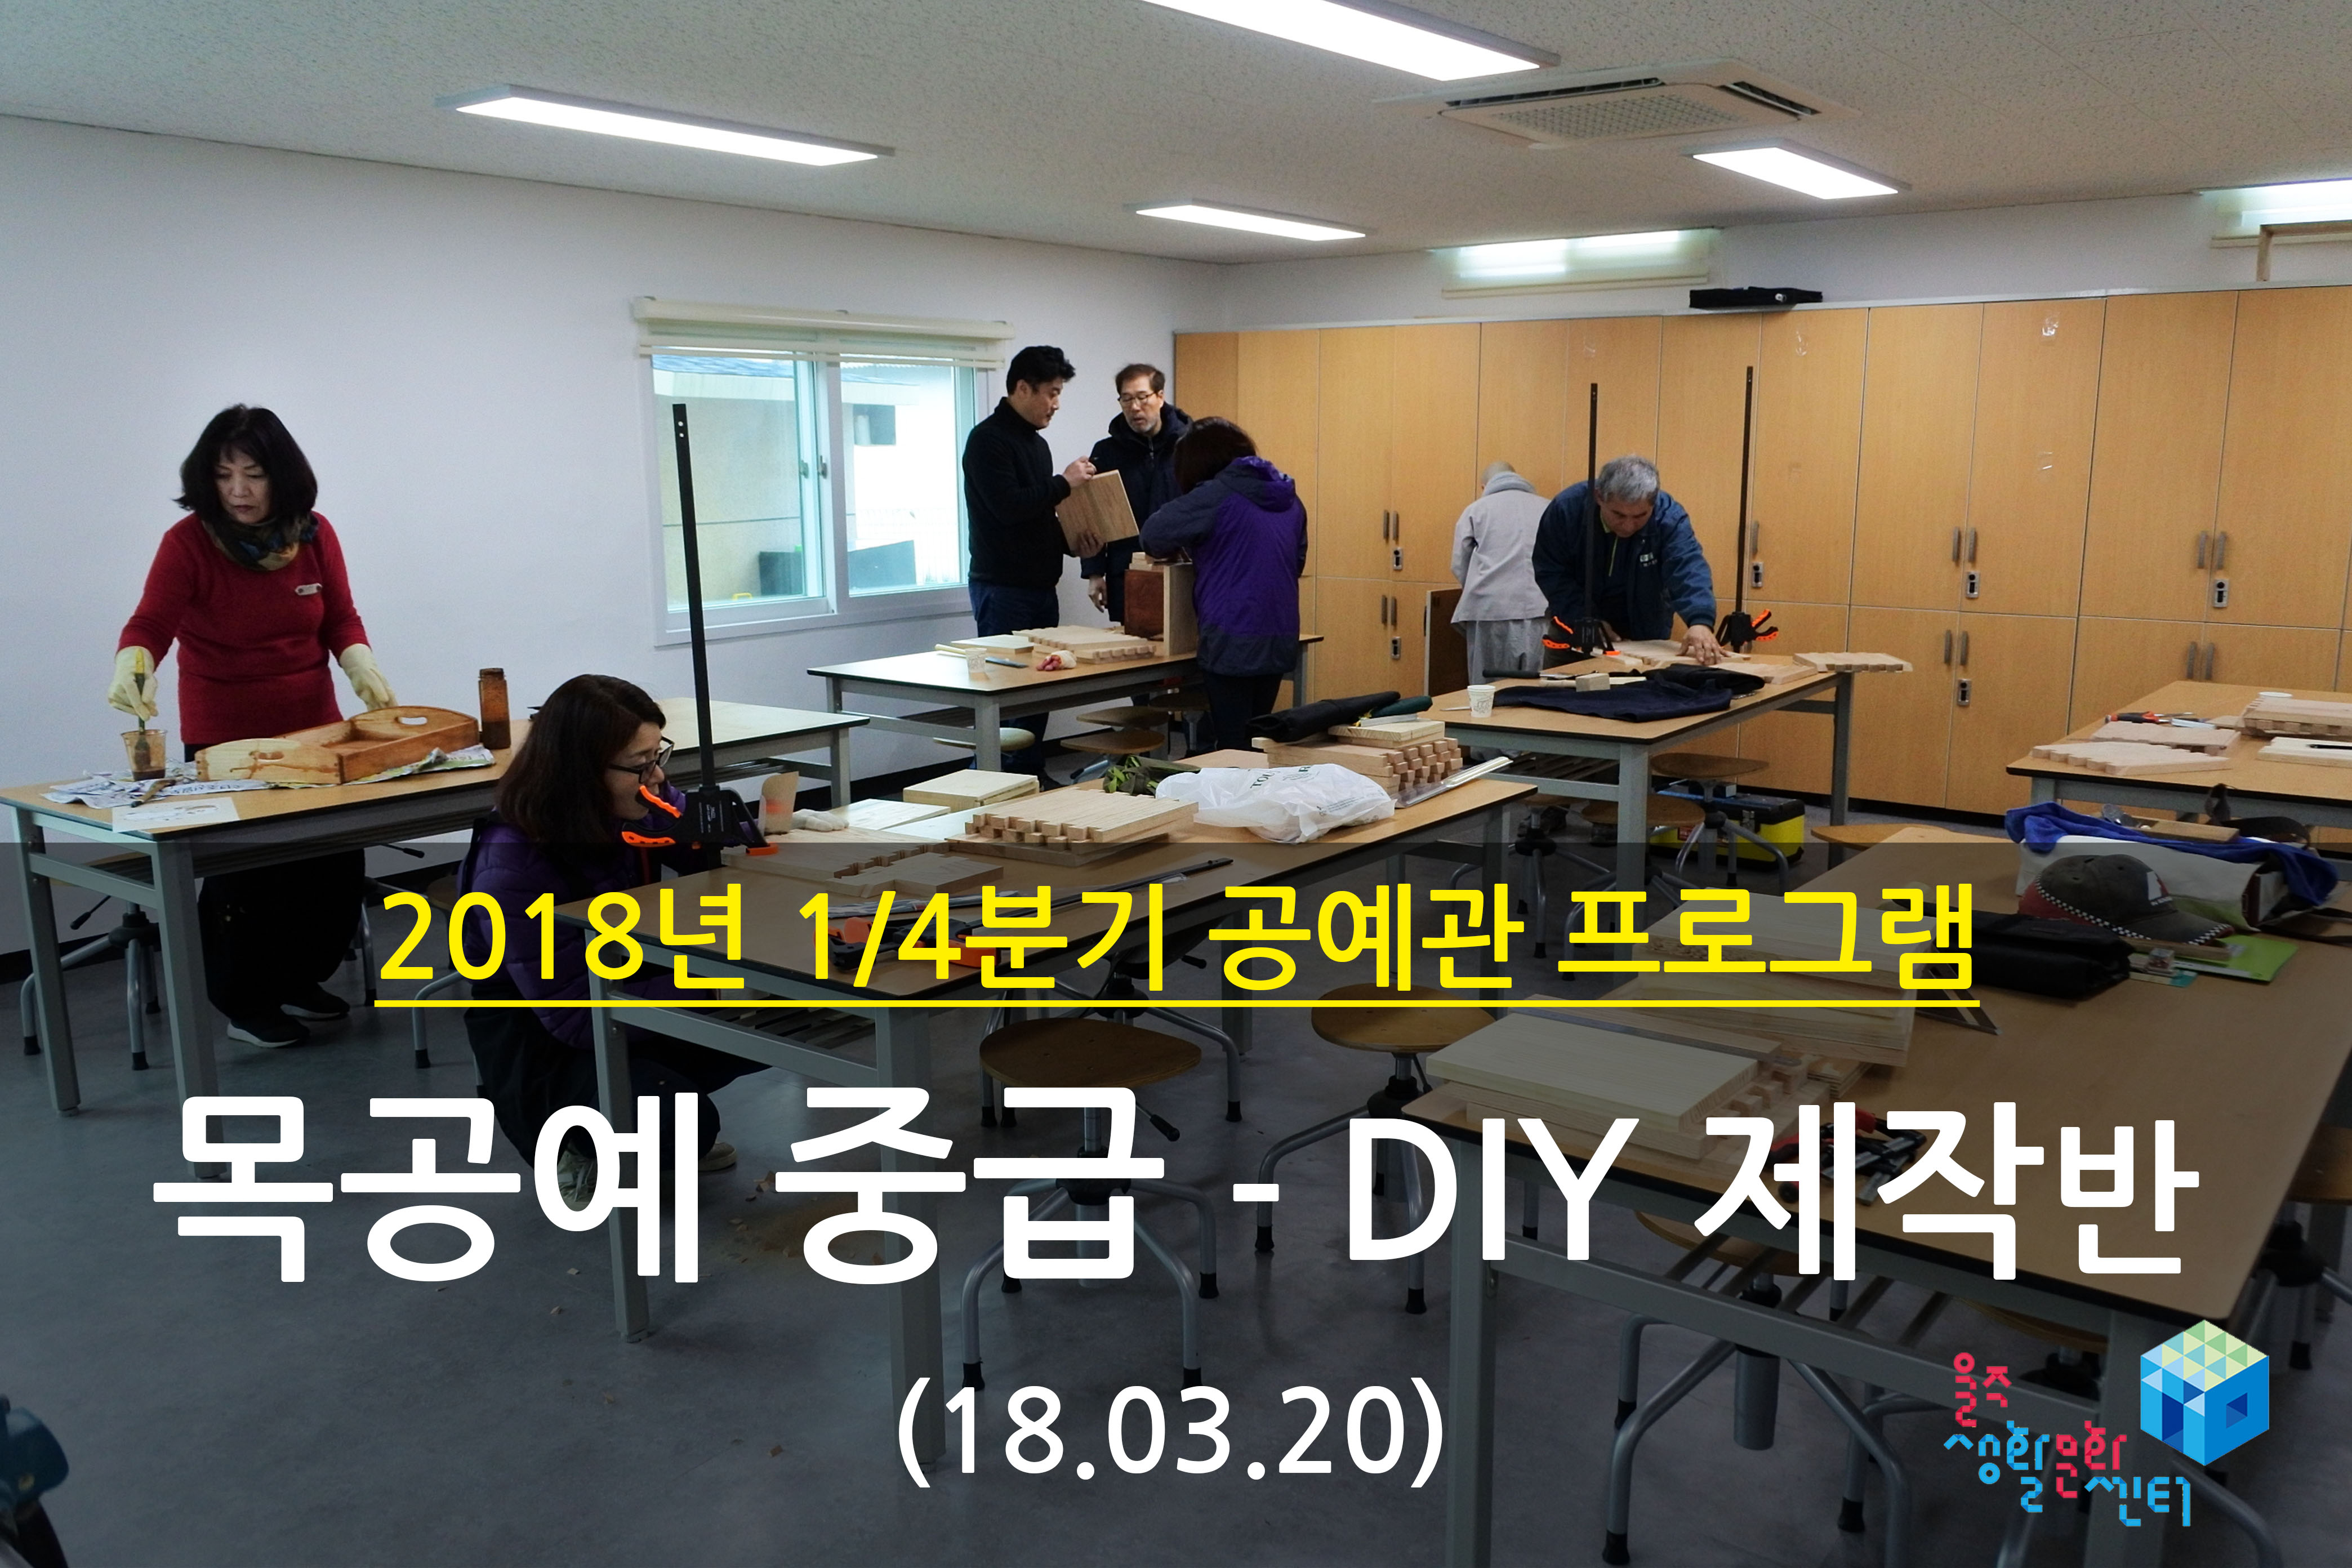 2018.03.20 _ 목공예 중급 - DIY 제작반 _ 1/4분기 11주차 수업